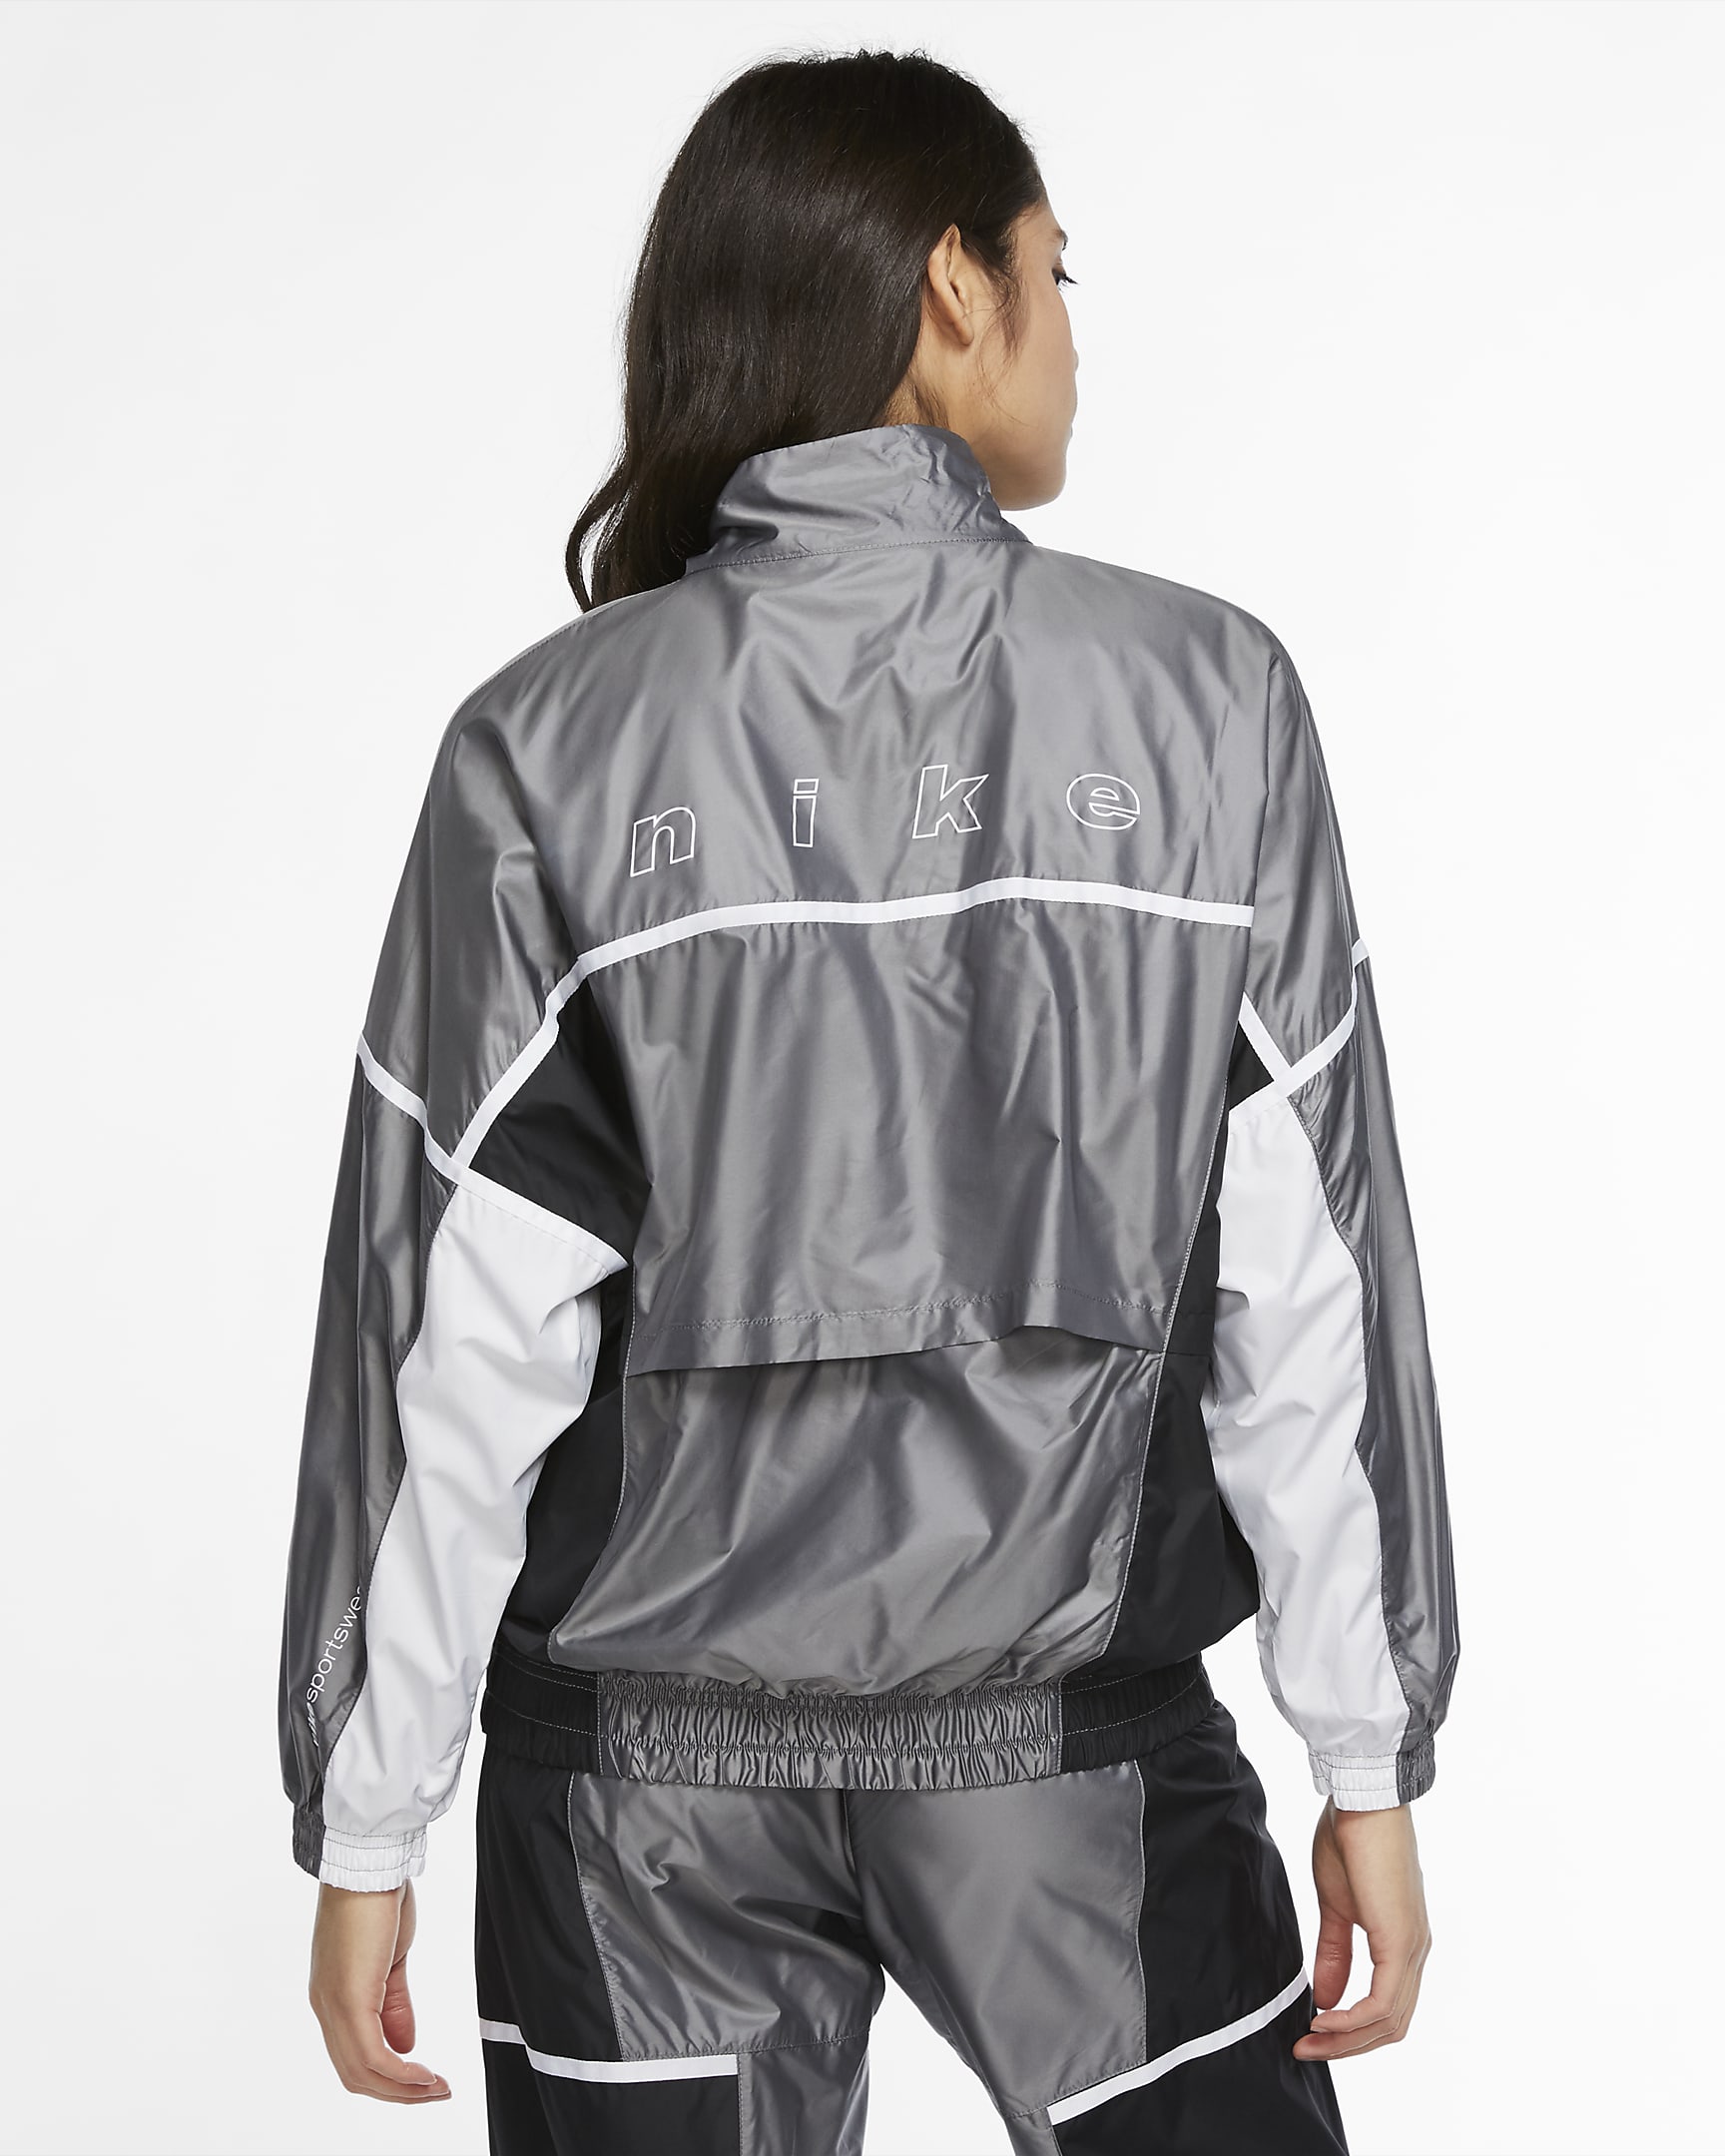 sportswear-woven-jacket-Kbdx6H (3).jpg